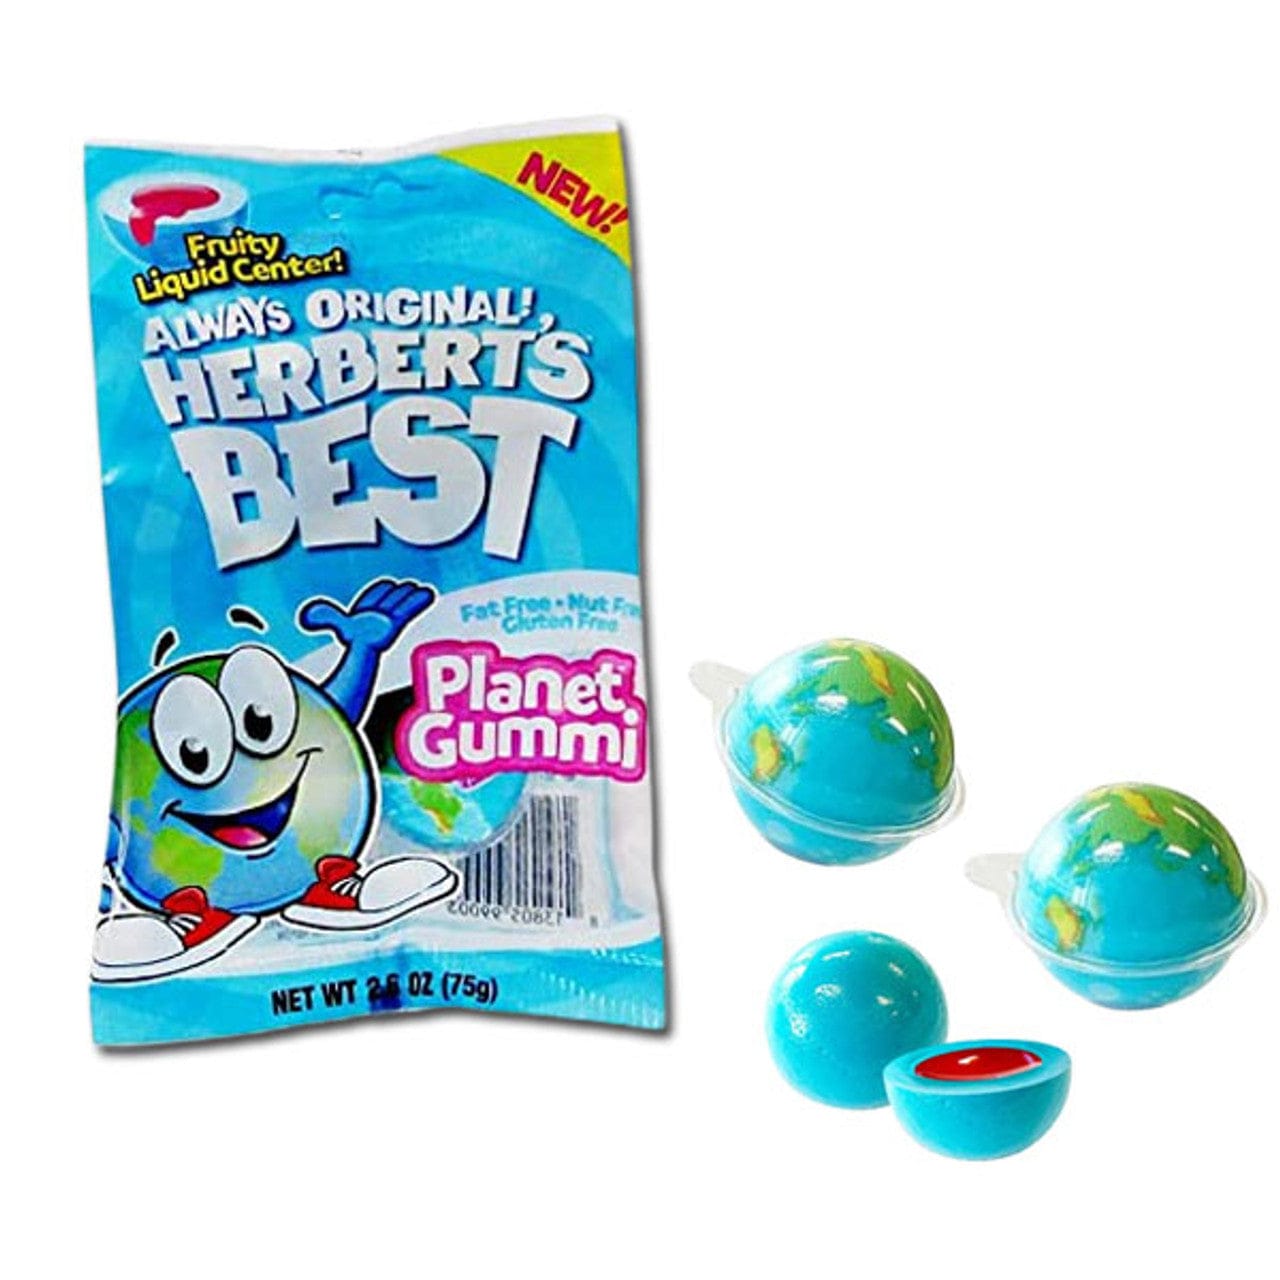 Herbert's Best Planet Gummi - 2.6oz